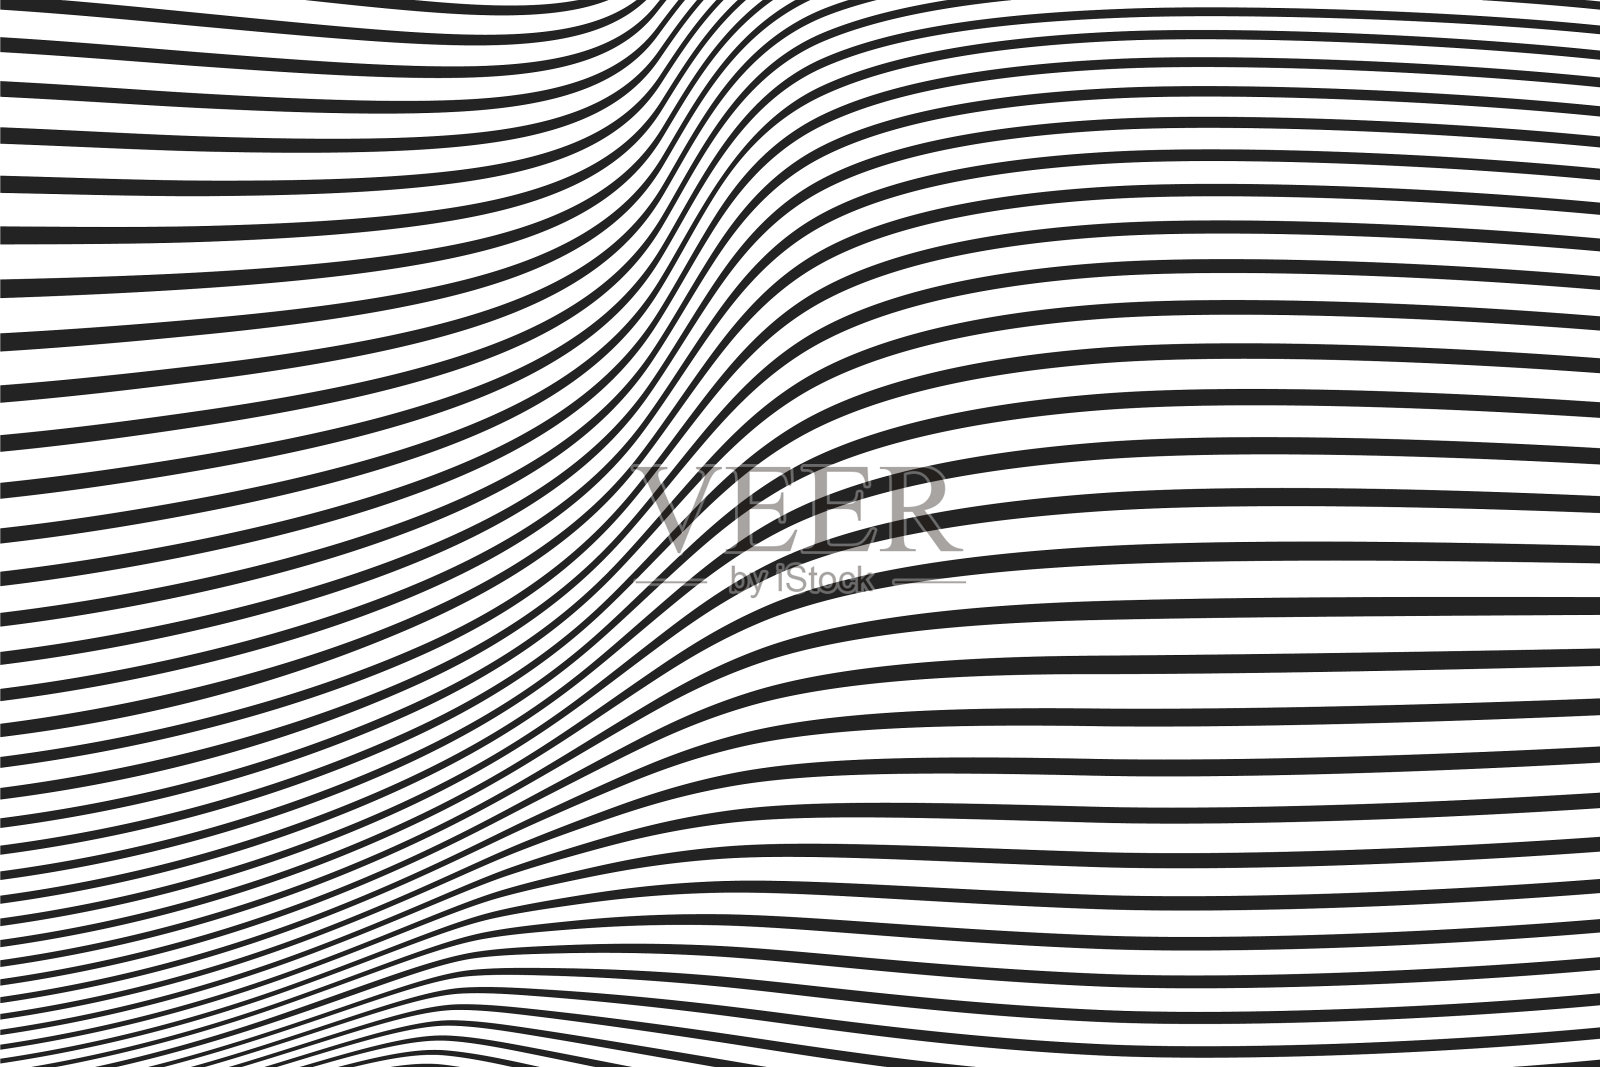 不同厚度的线条形成波浪状的表面插画图片素材